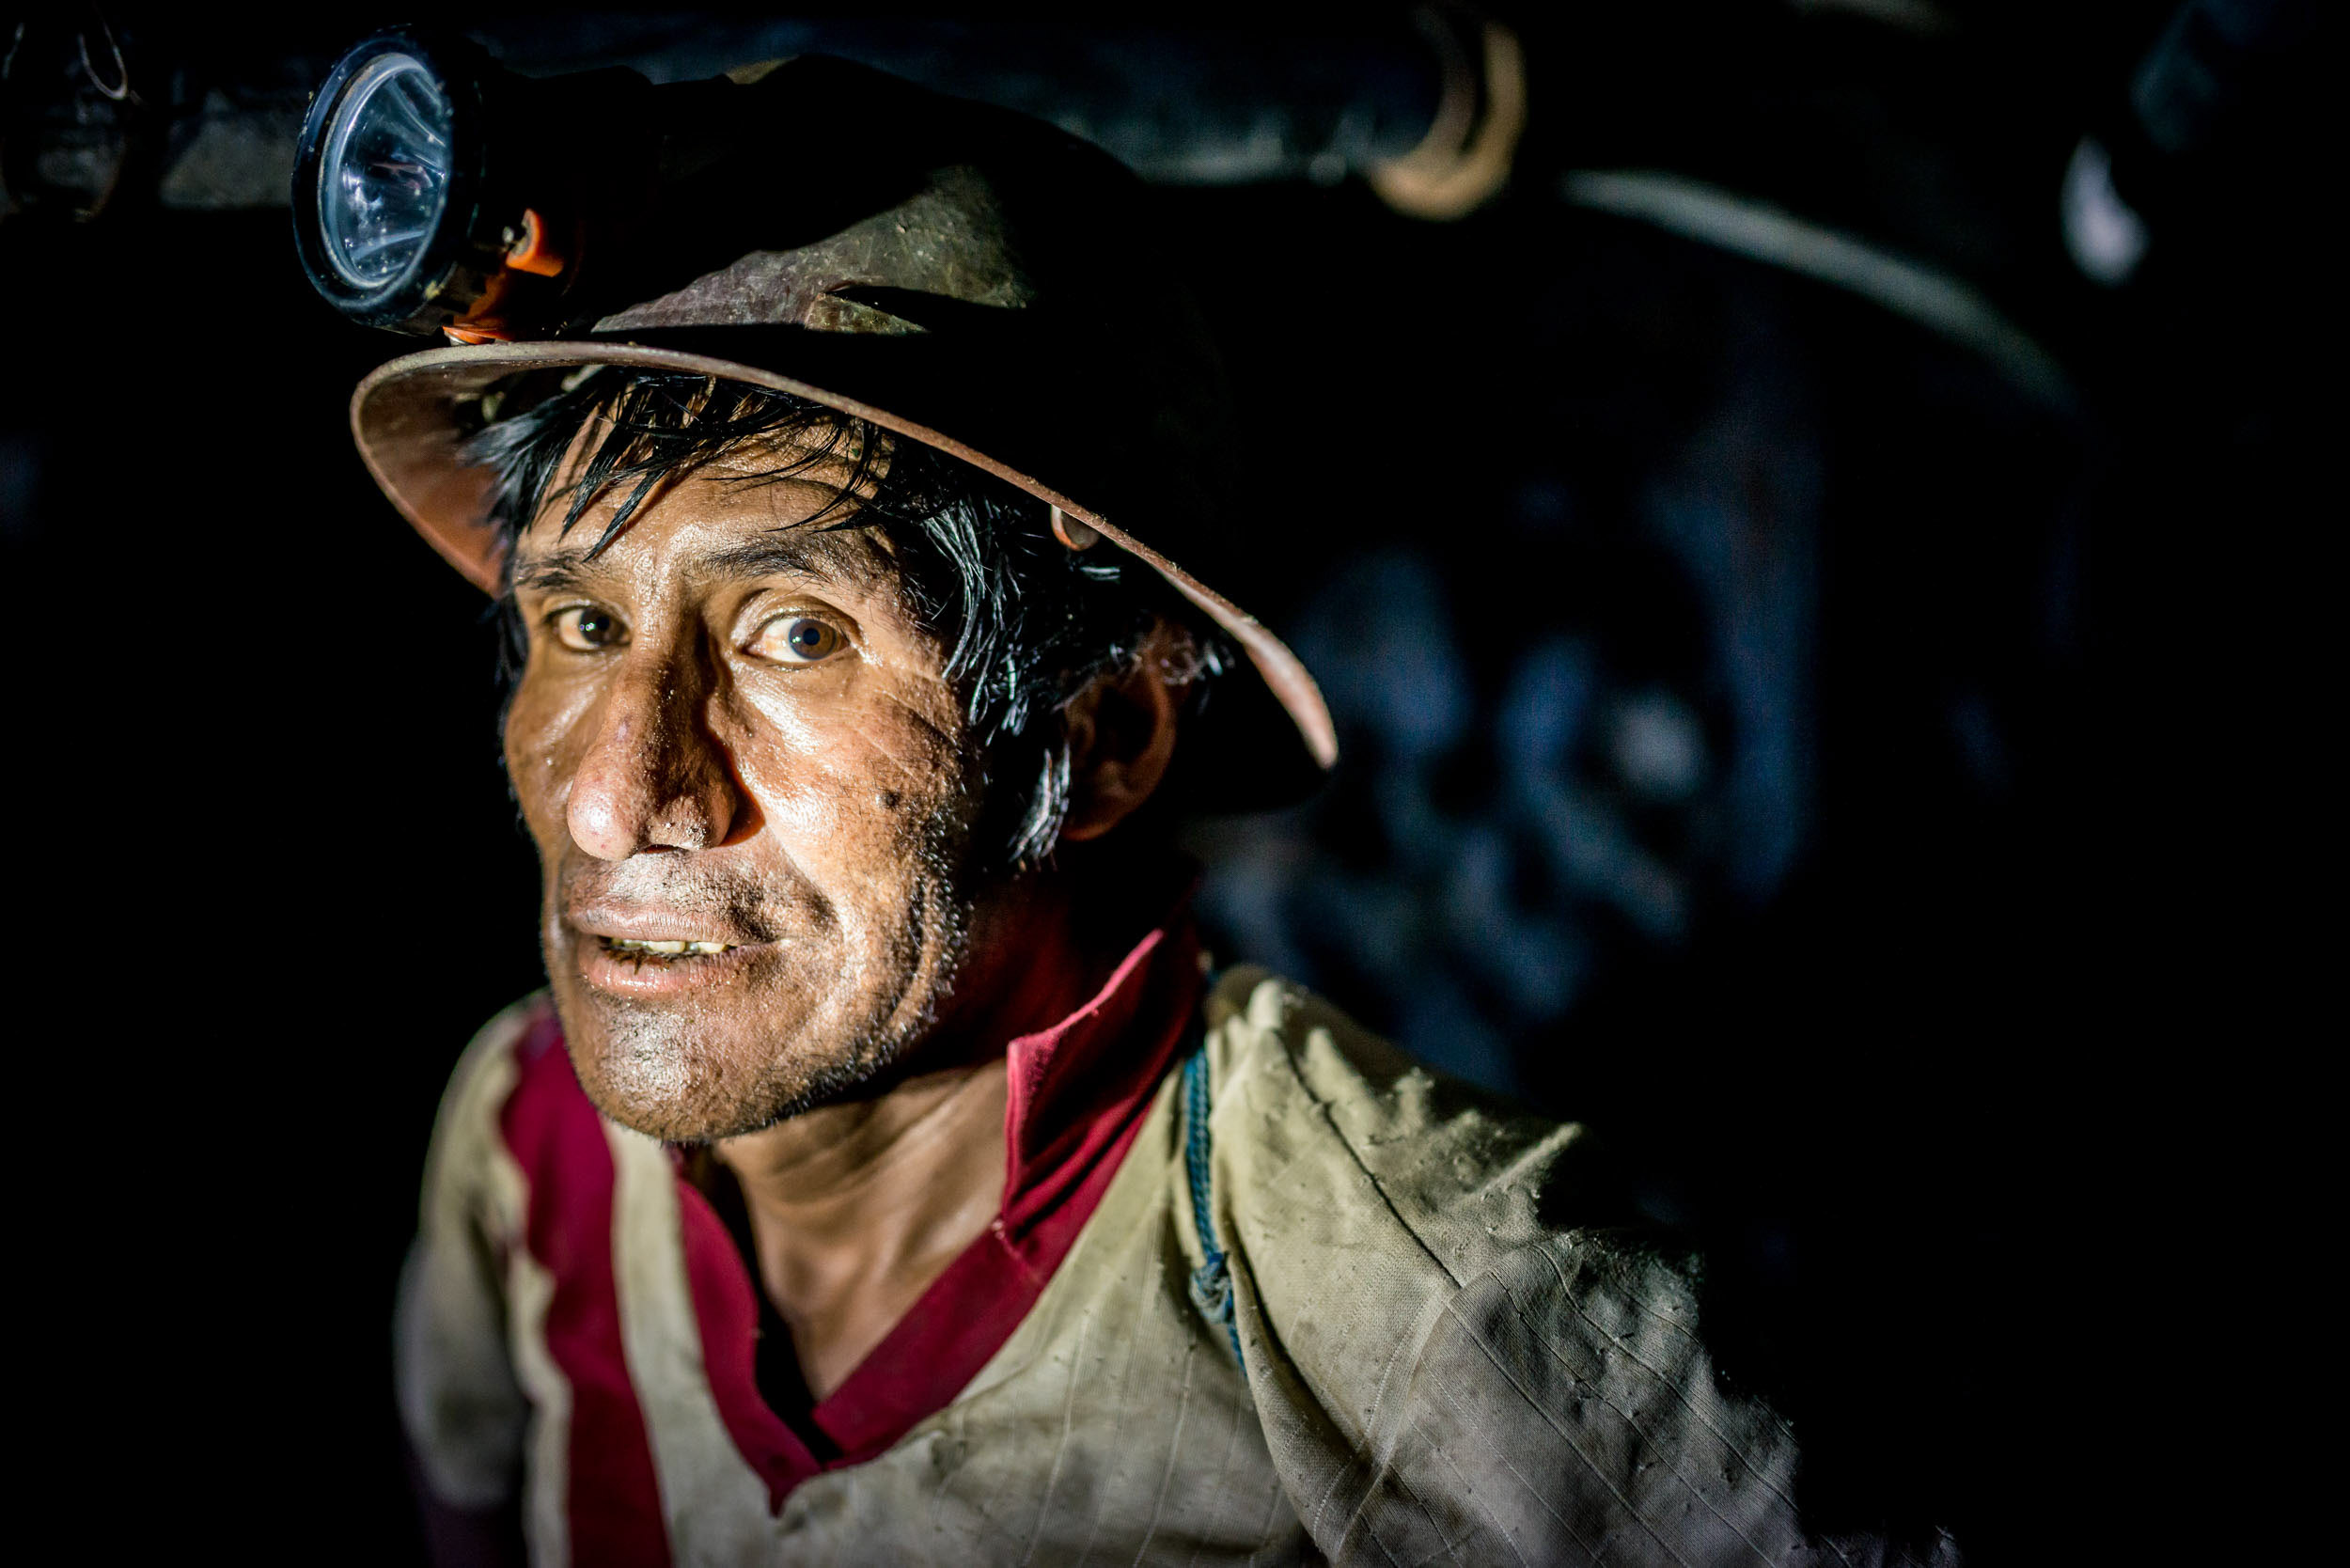 portrait-miner-cerro-rico-potosi-worker-bolivia